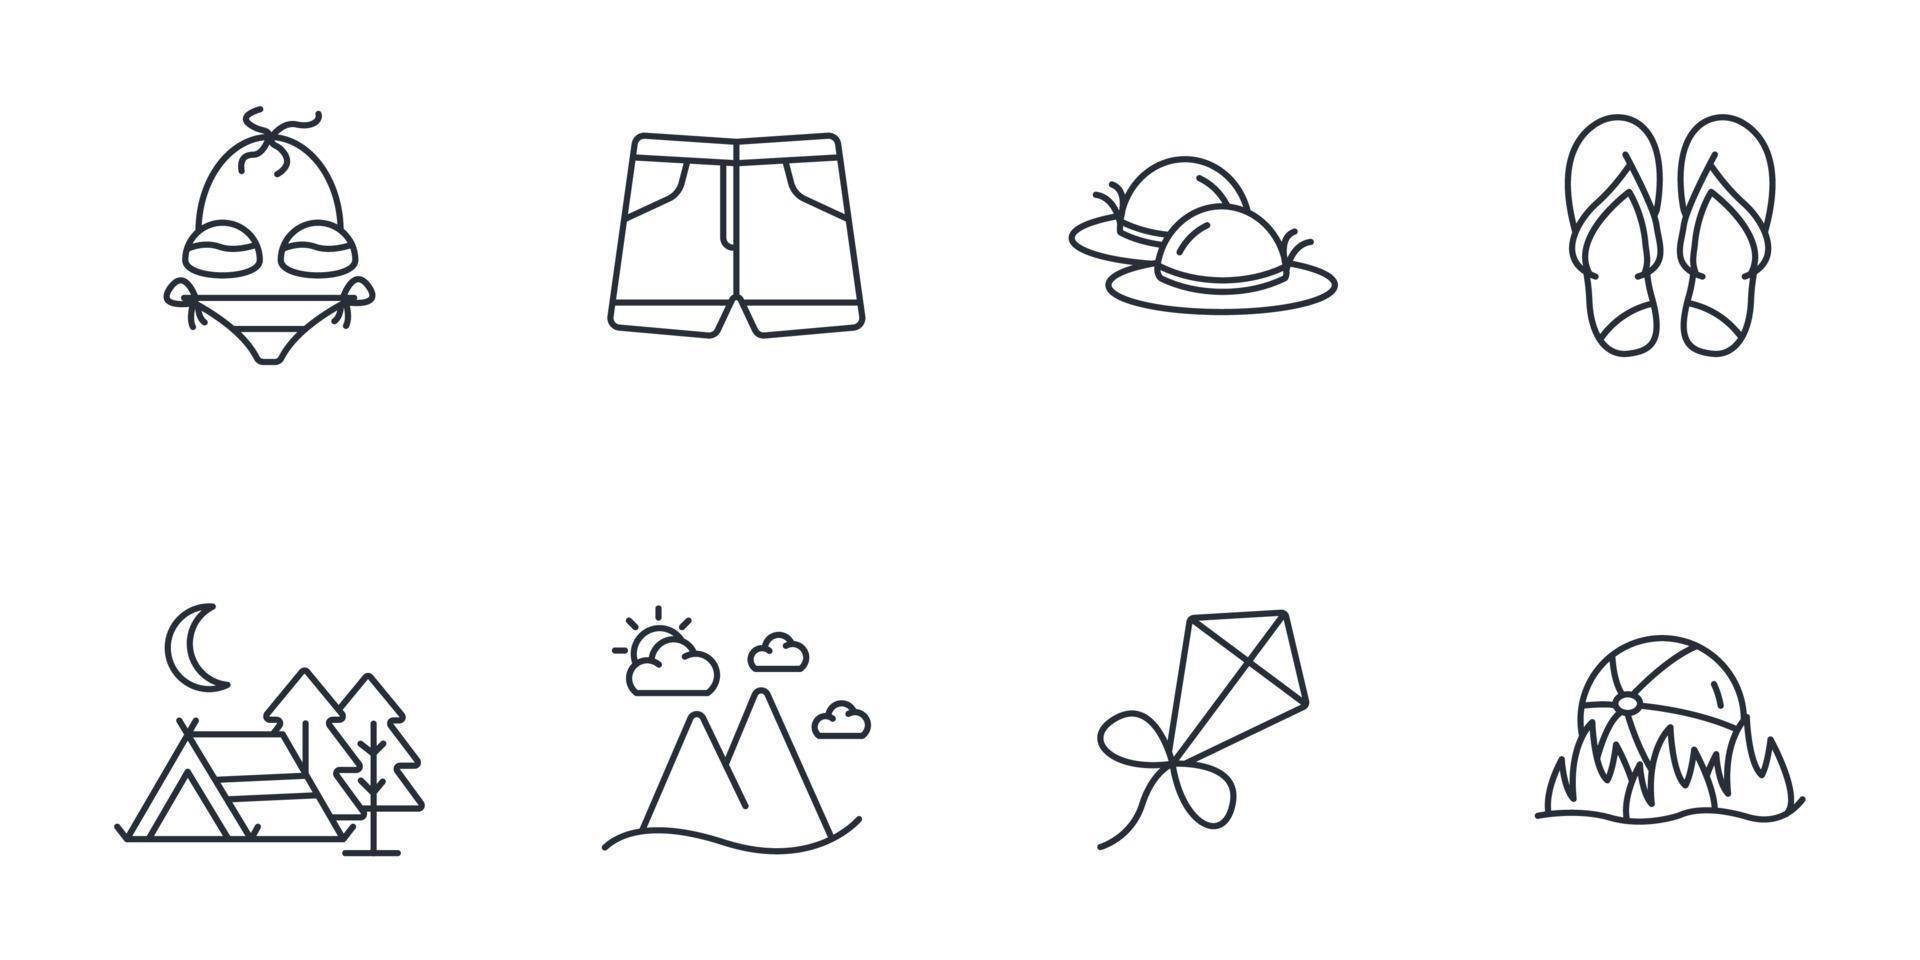 conjunto de iconos de vacaciones de verano. elementos de vector de símbolo de paquete de vacaciones de verano para web de infografía